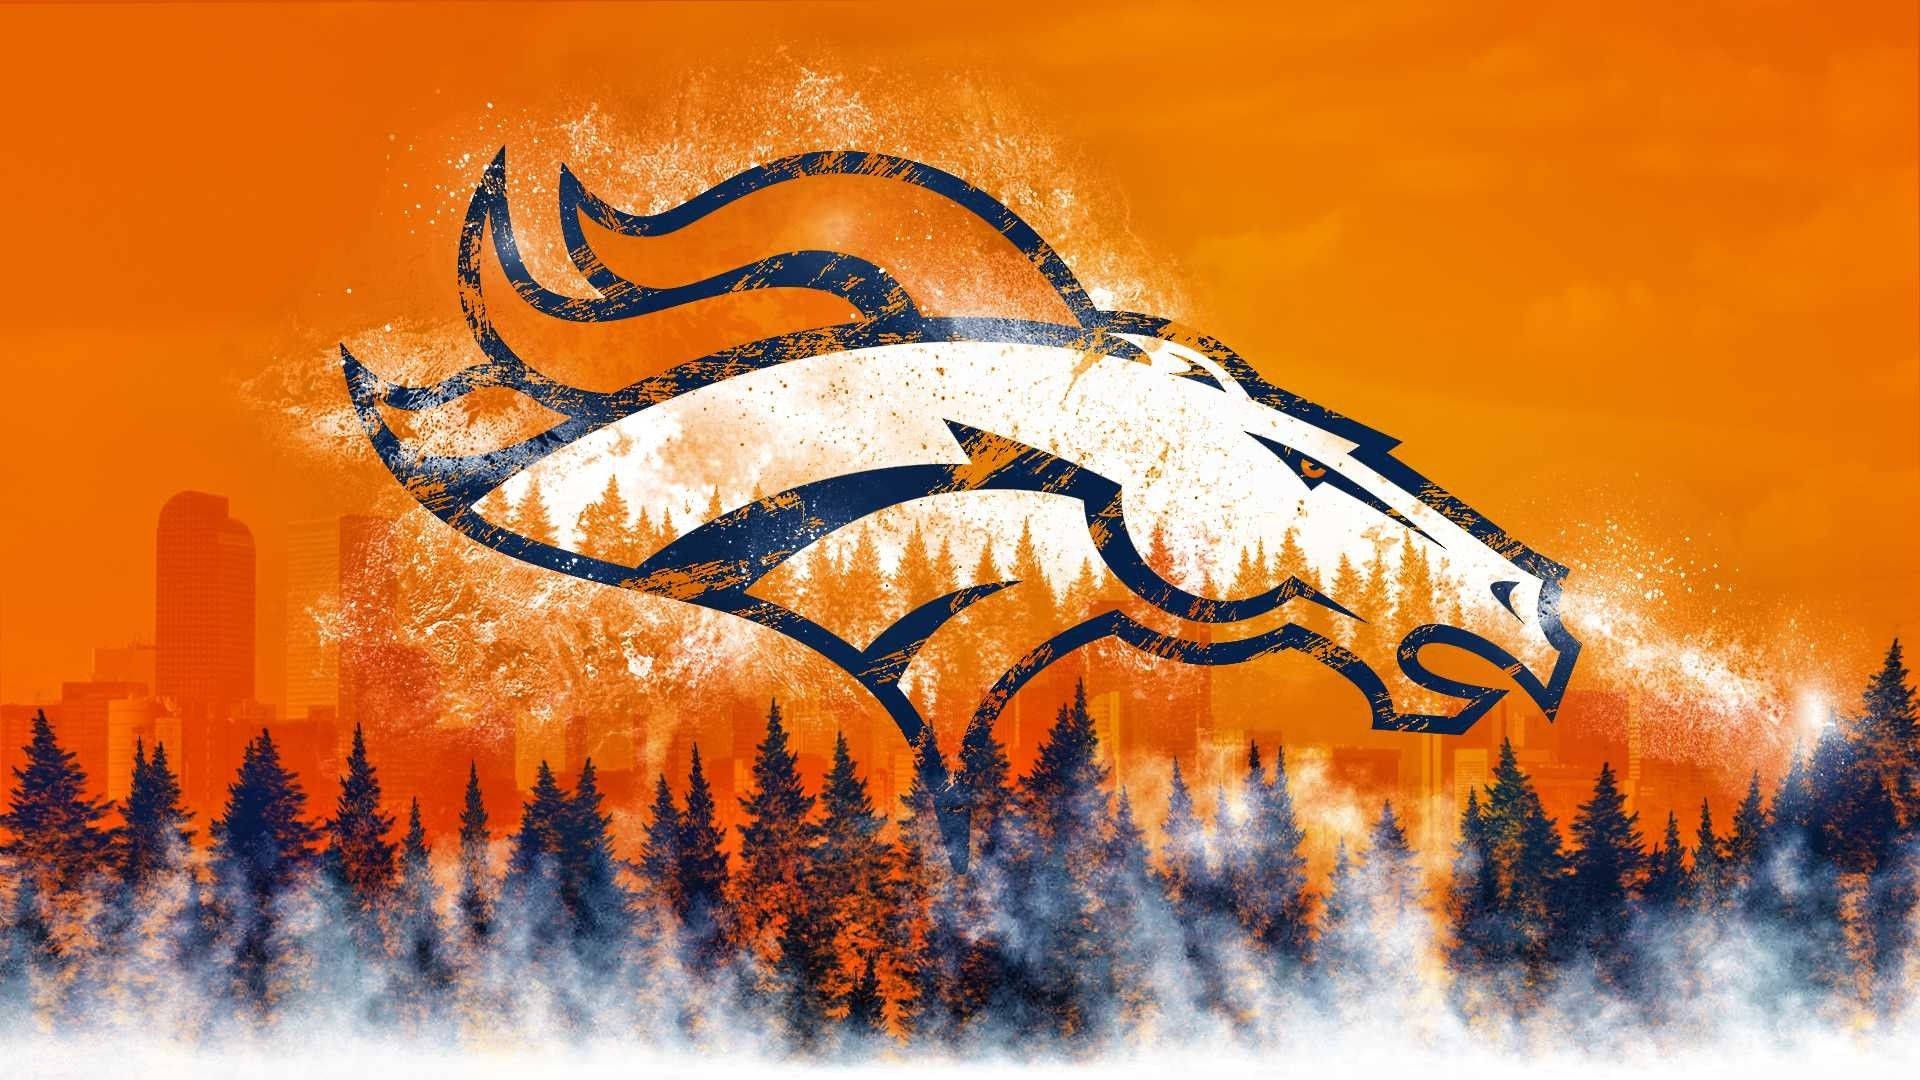 Hình nền Denver Broncos: Tình yêu với đội bóng Denver Broncos có thể được thể hiện qua việc chọn hình nền độc đáo mang màu sắc và biểu tượng của đội bóng này. Hãy cập nhật bộ sưu tập hình nền Denver Broncos của bạn để thể hiện tình cảm với đội bóng của mình.